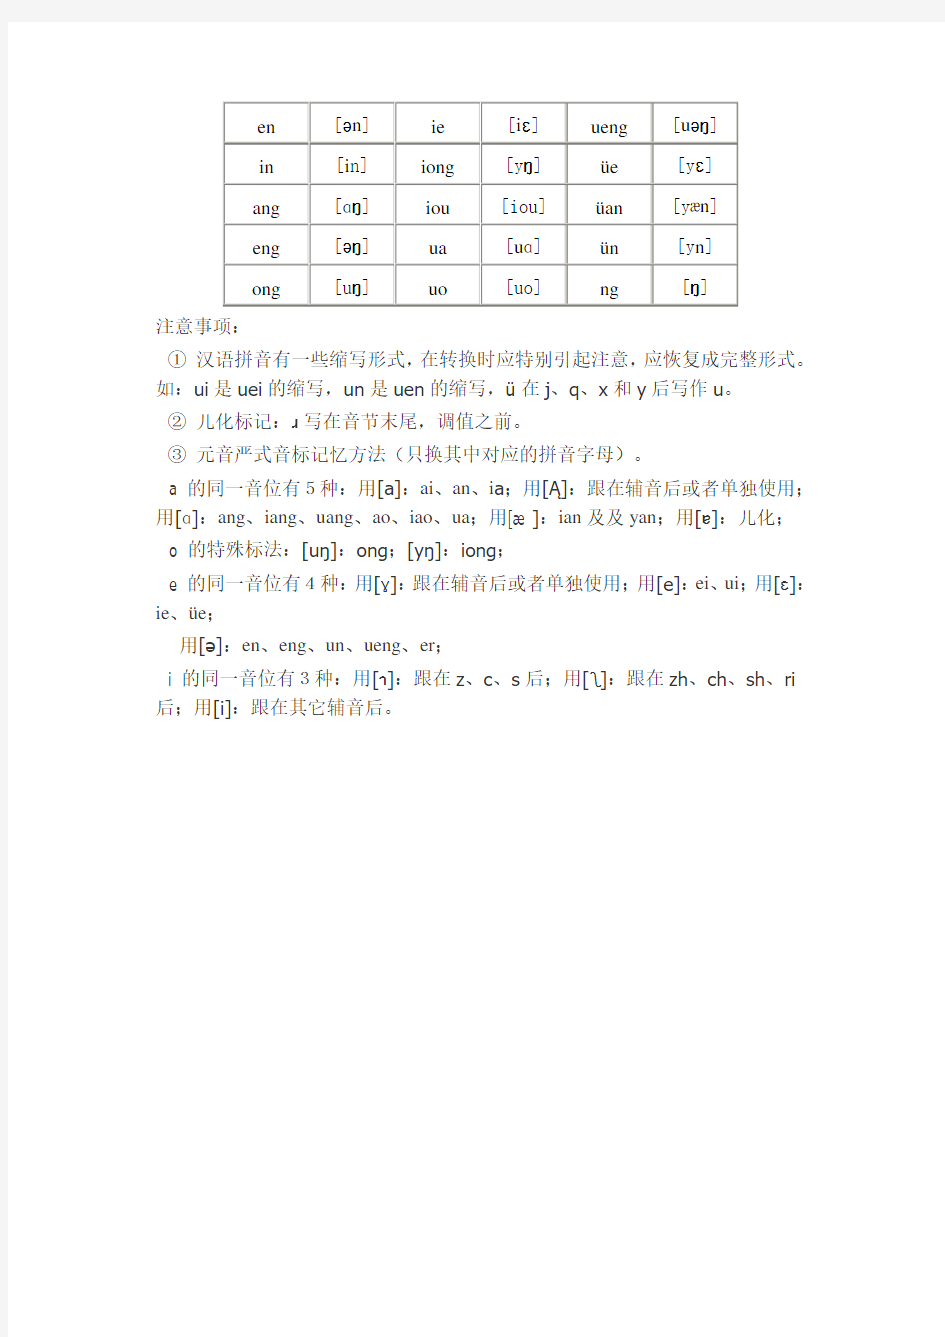 汉语拼音字母与国际音标对照表